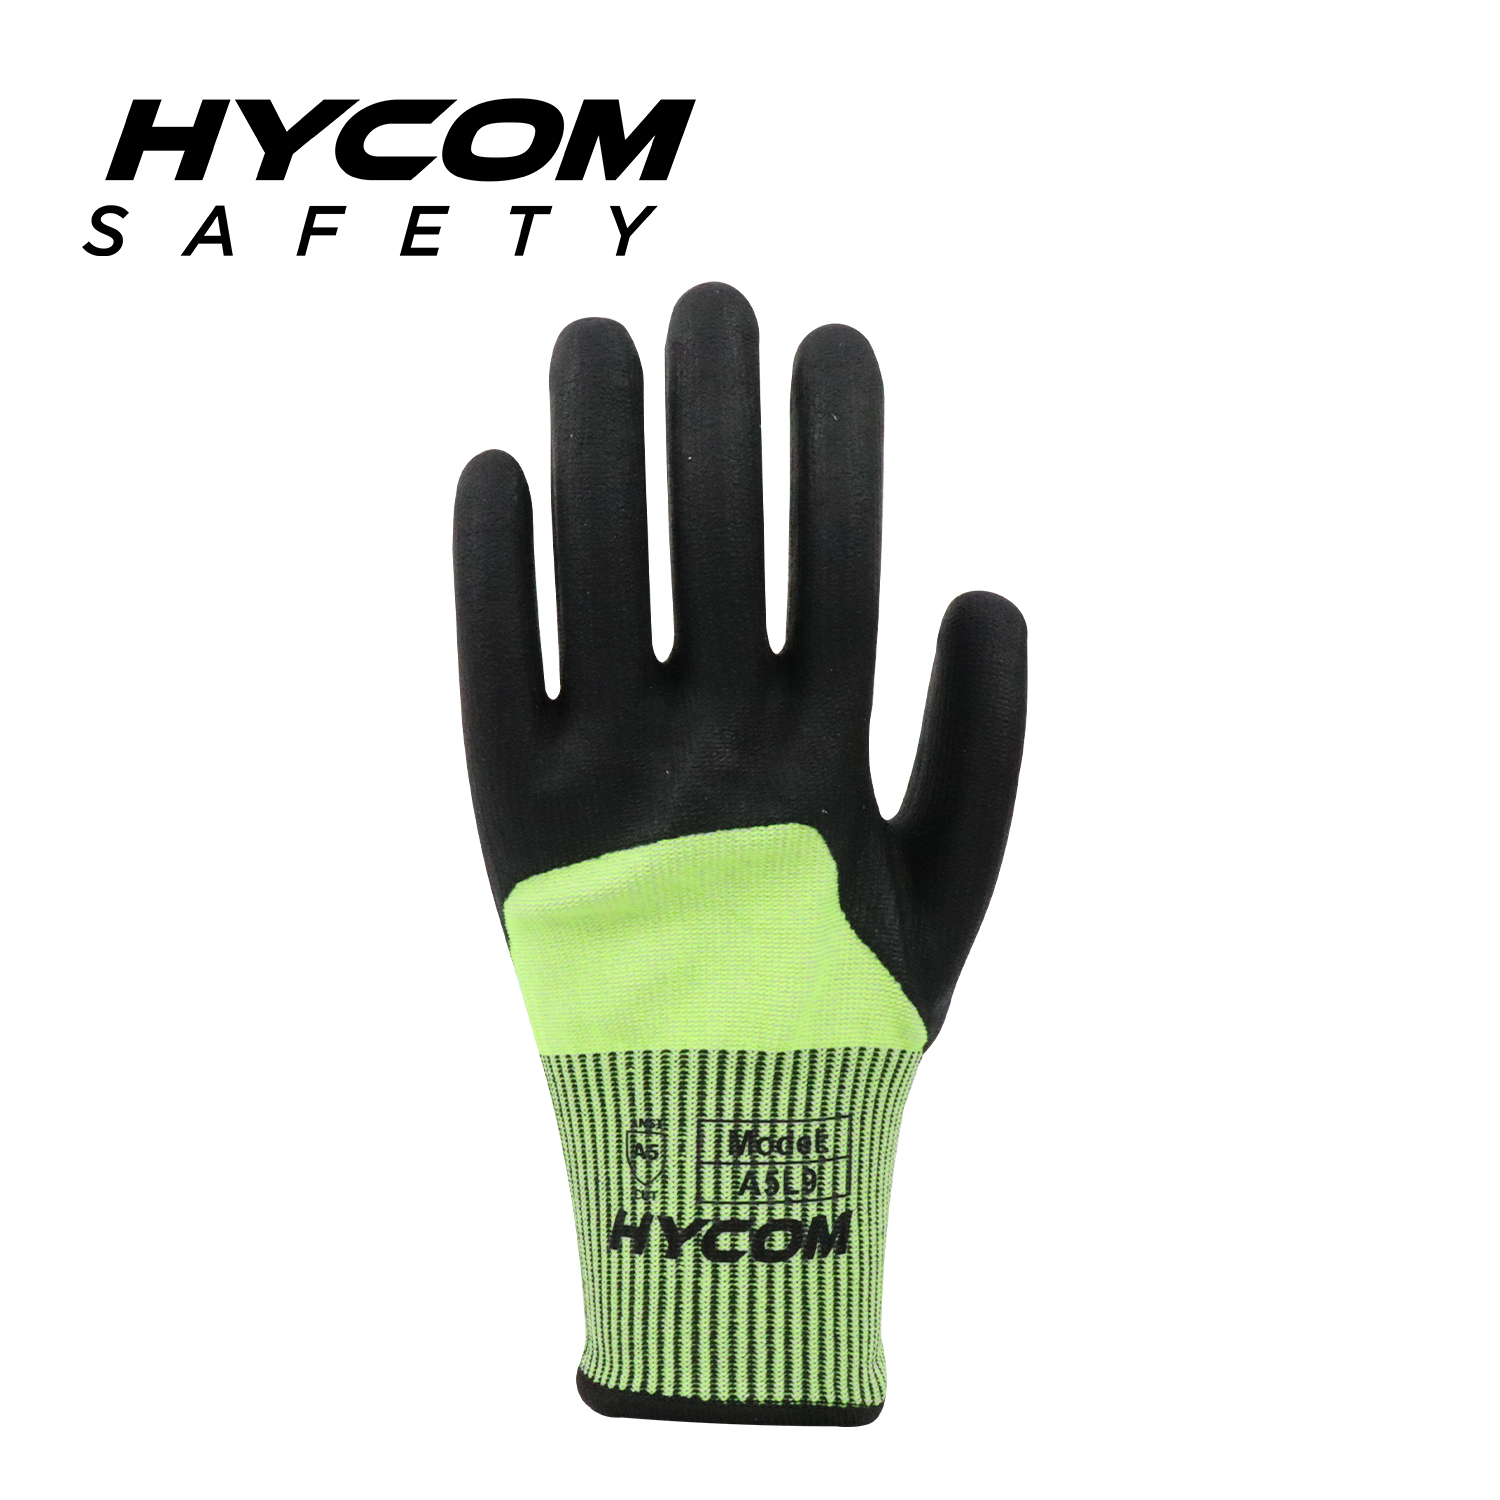 HYCOM 13GG ANSI 5 Guante resistente a cortes con revestimiento de nitrilo 3/4 Guantes de trabajo PPE